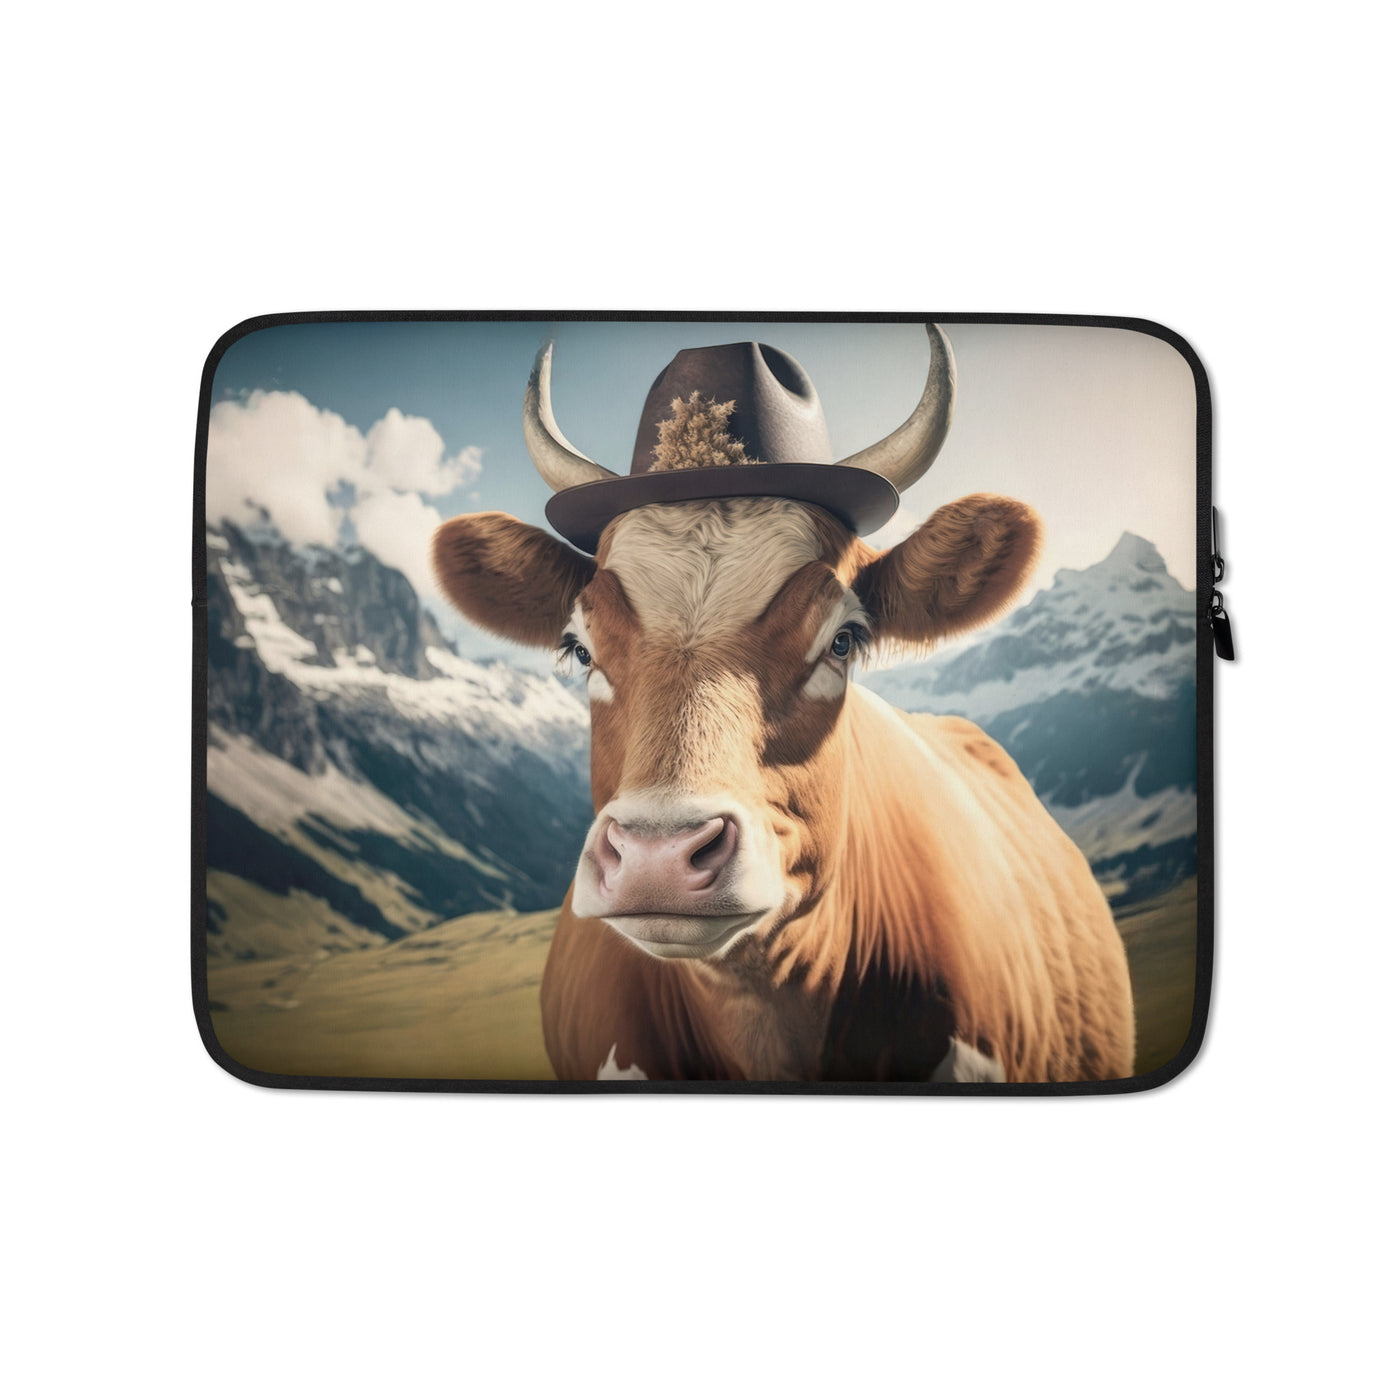 Kuh mit Hut in den Alpen - Berge im Hintergrund - Landschaftsmalerei - Laptophülle berge xxx 13″